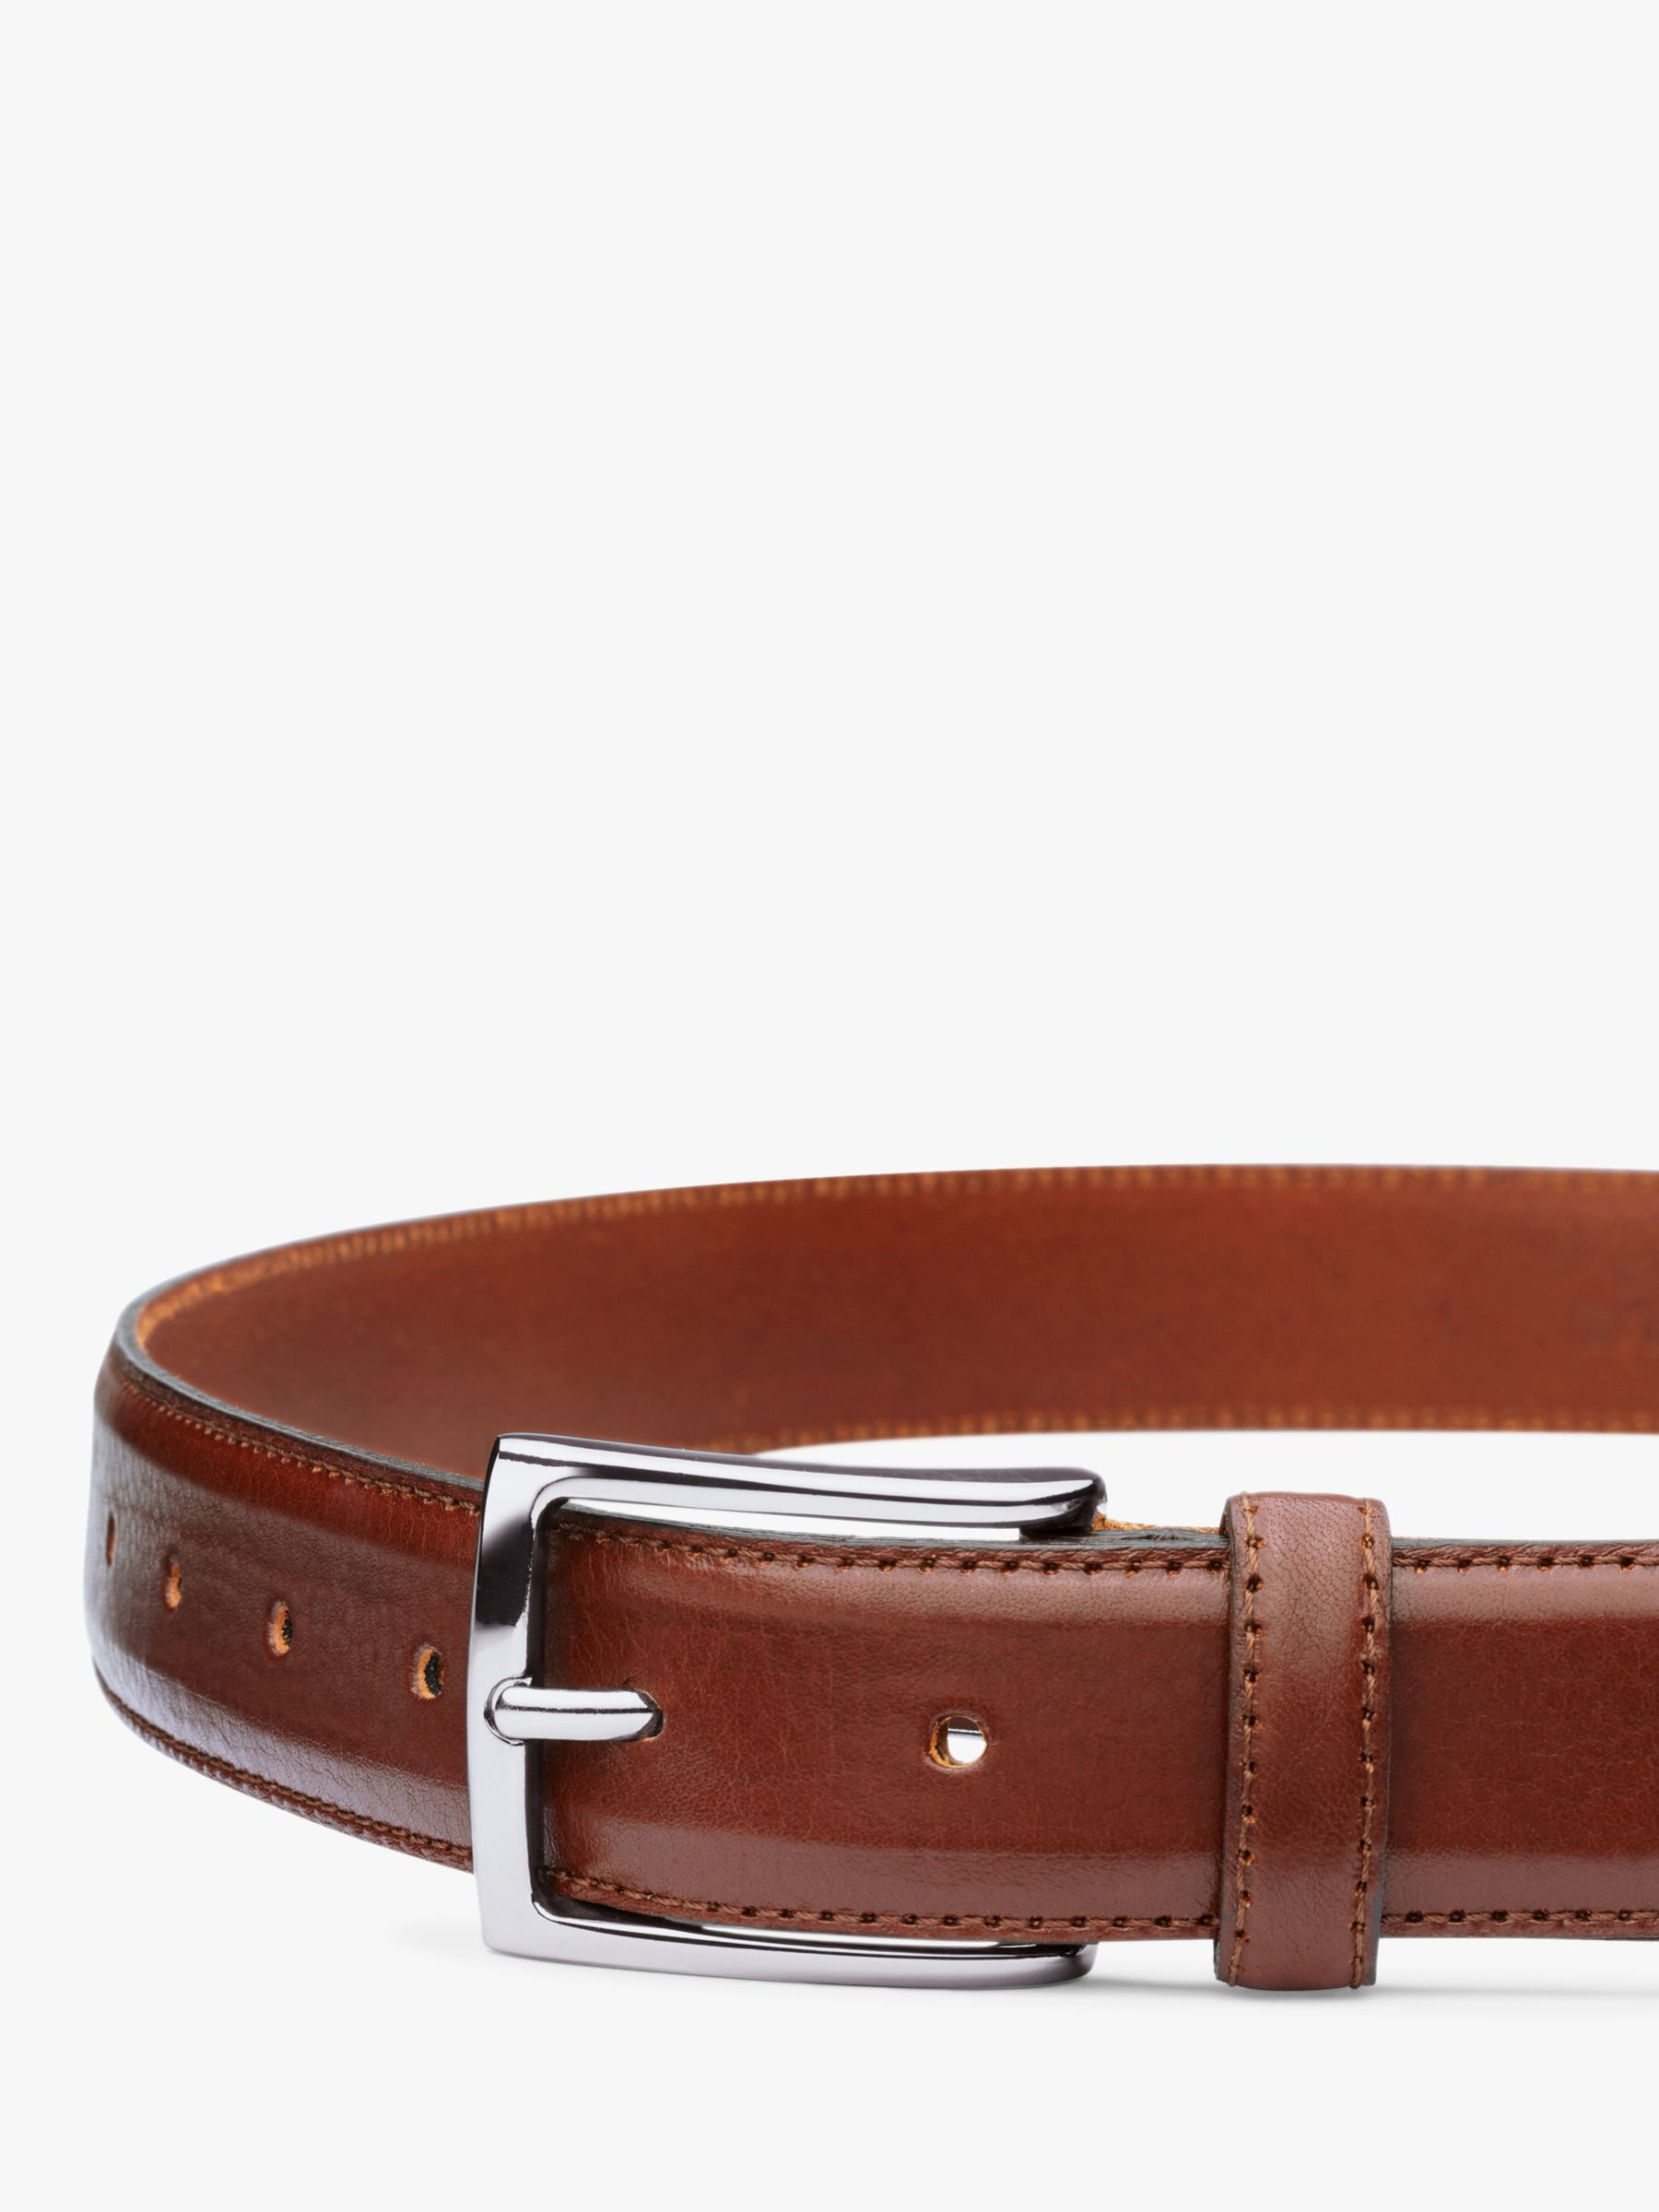 Buy Charles Tyrwhitt Leather Belt, Dark Tan Online at johnlewis.com